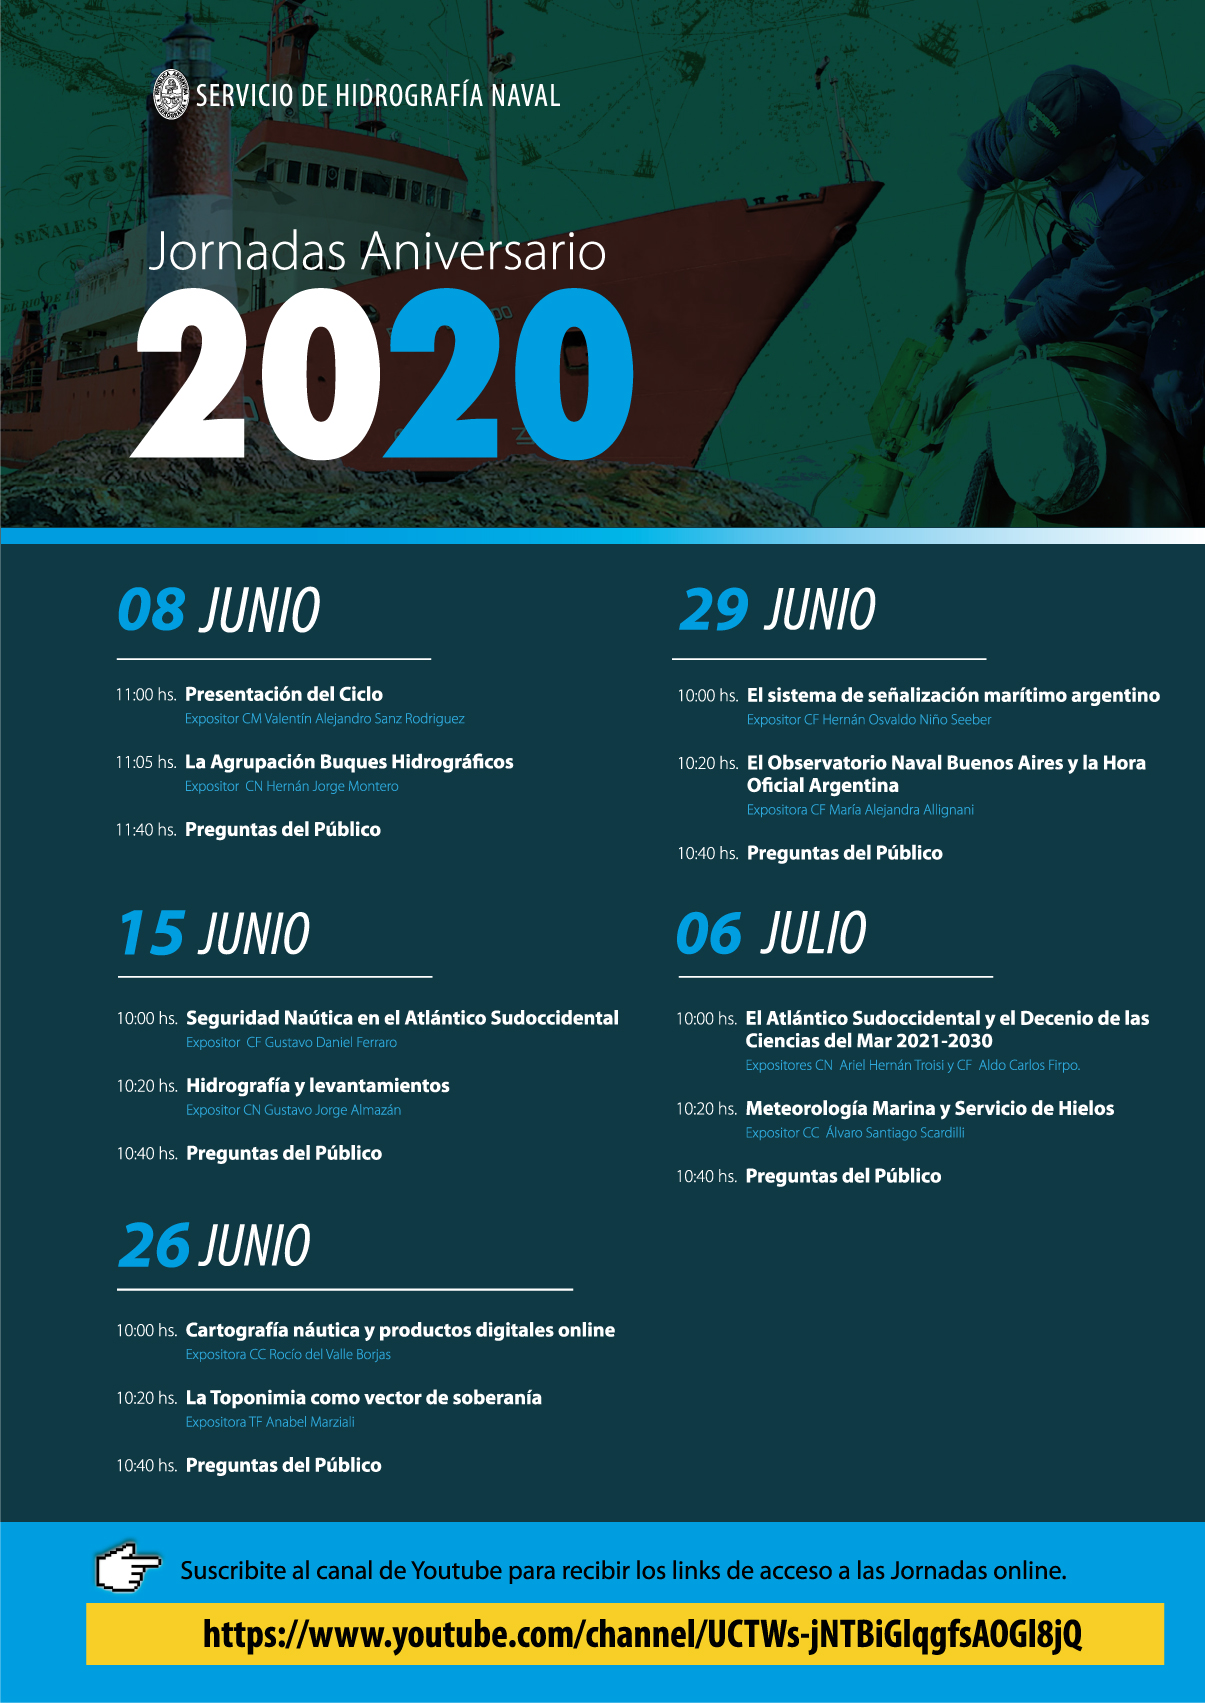 Cronograma de las Jornadas Aniversario 2020